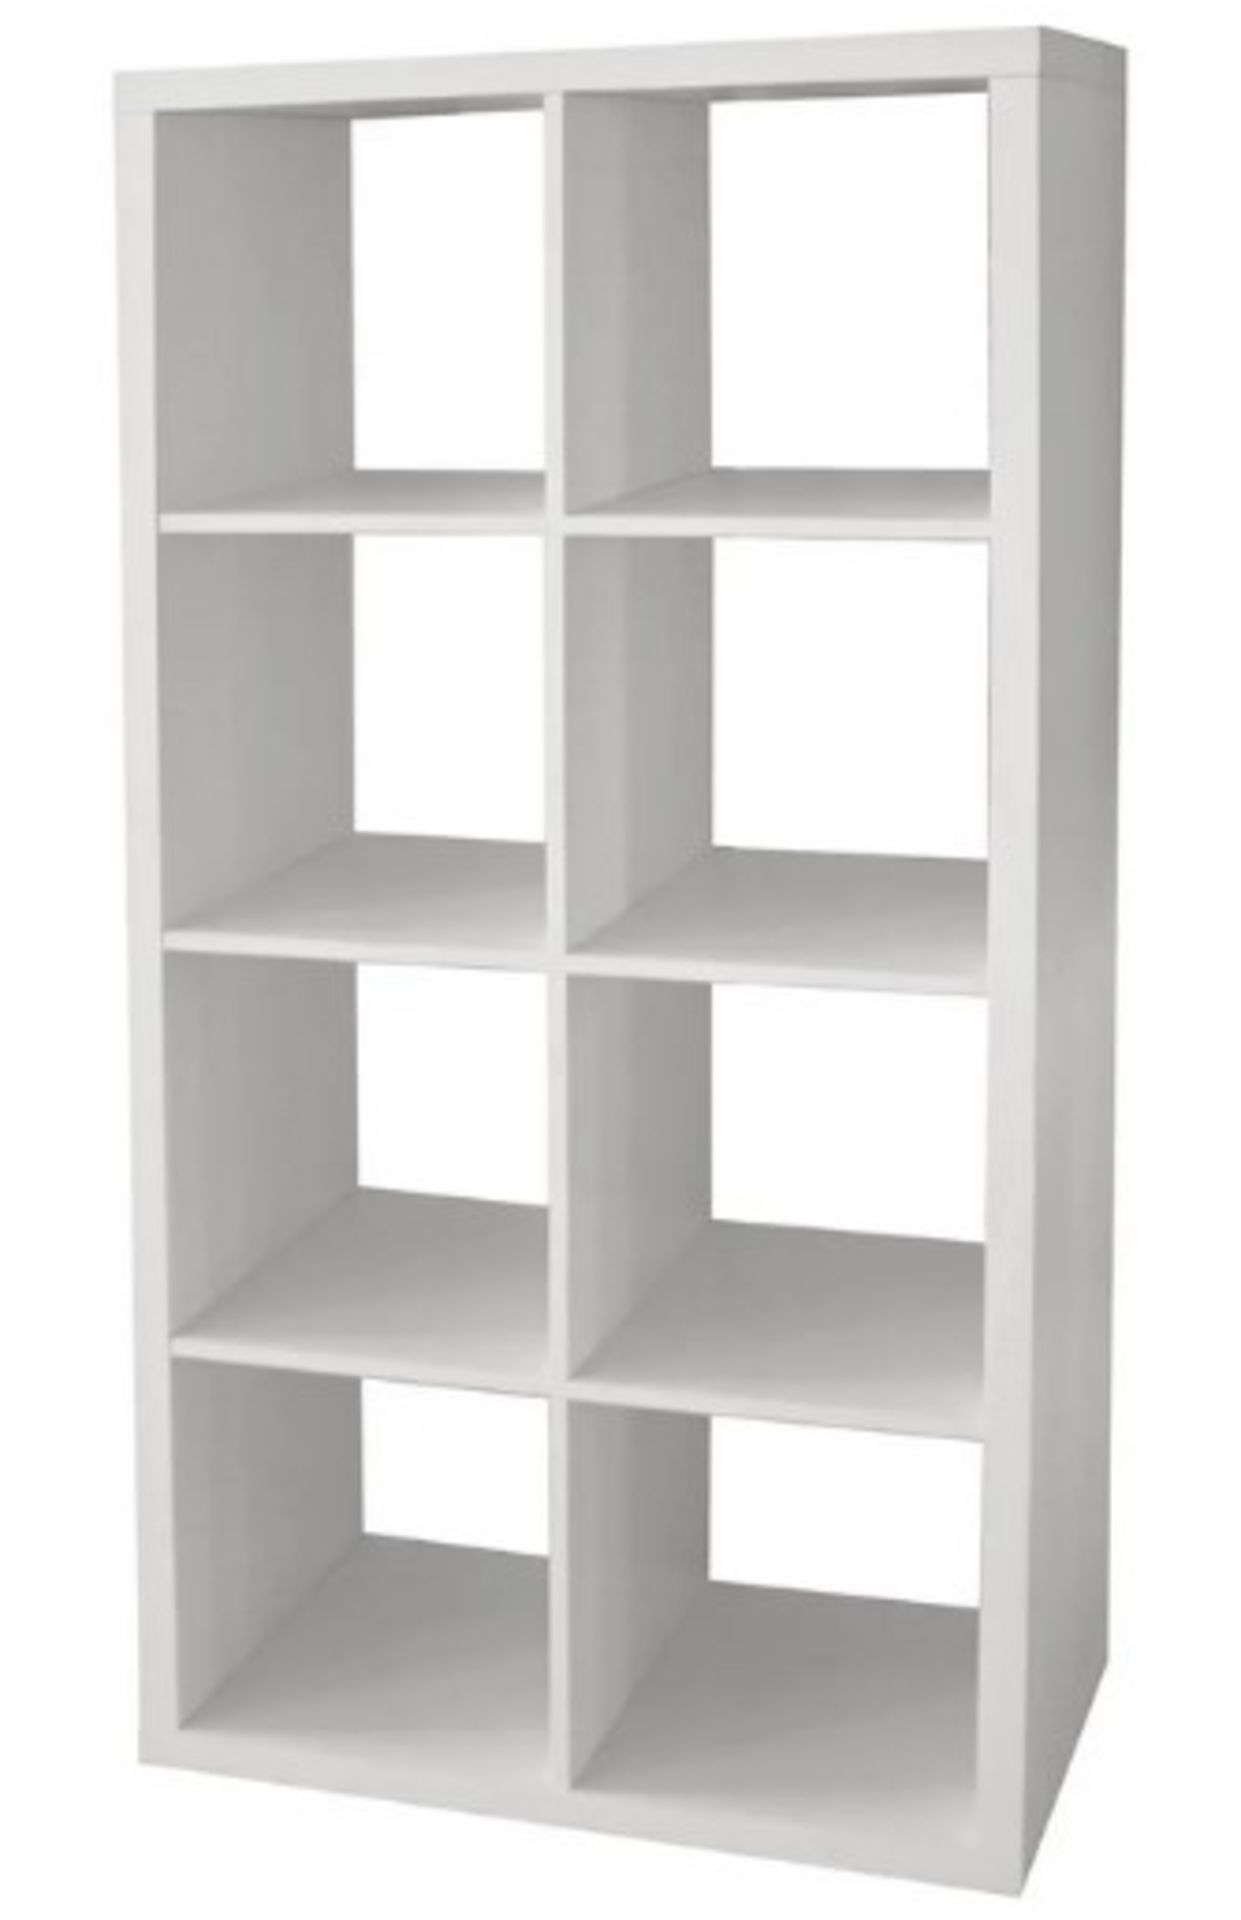 (102/Mez) Living Elements Clever Cube 2x4 Cube Storage Unit White Matt Finish. 8 Separate Compart...